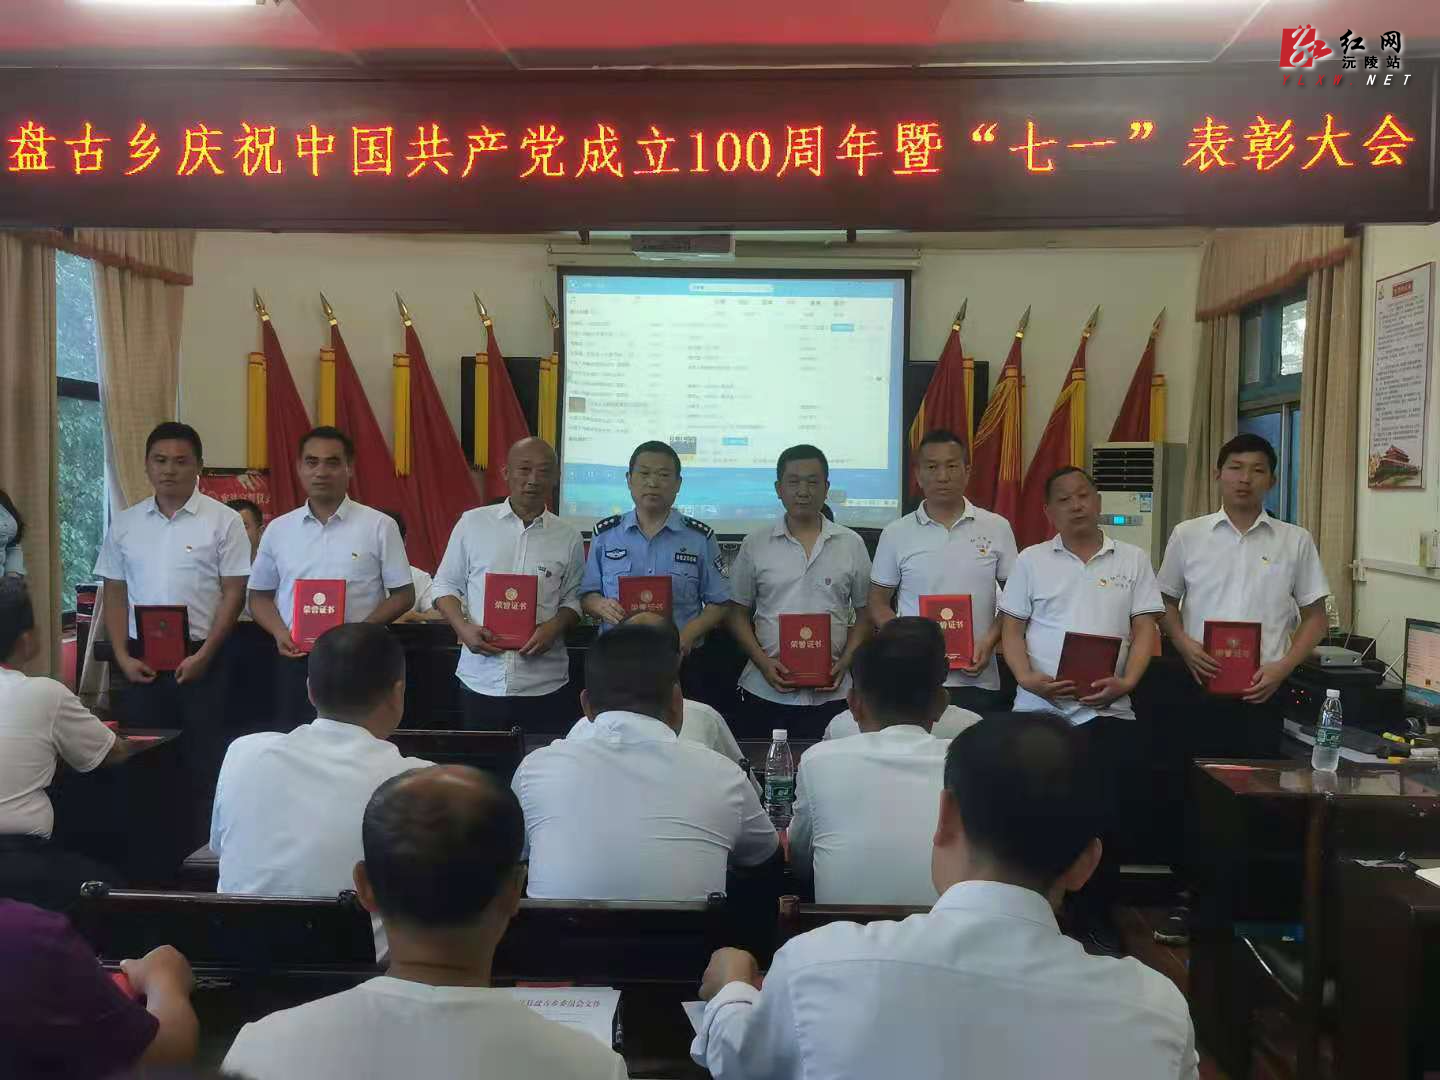 盘古乡召开庆祝中国共产党成立100周年暨七一表彰大会